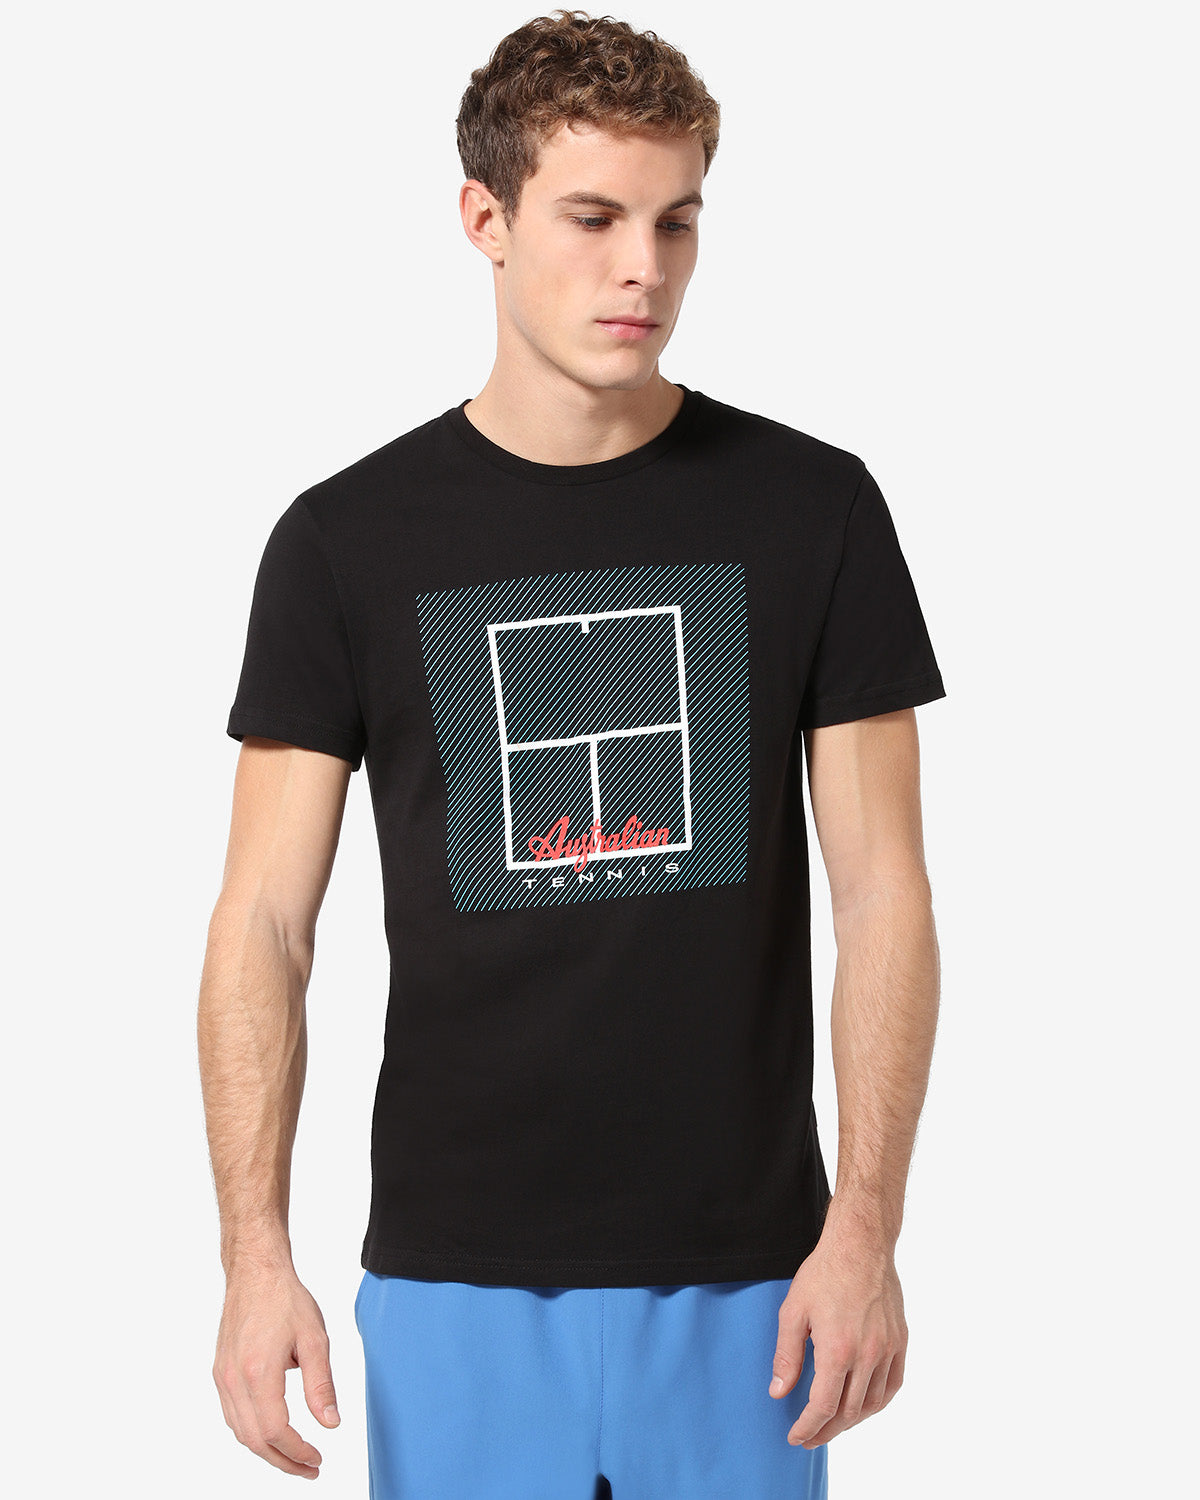 Tennis Court T-shirt: Australian Tennis